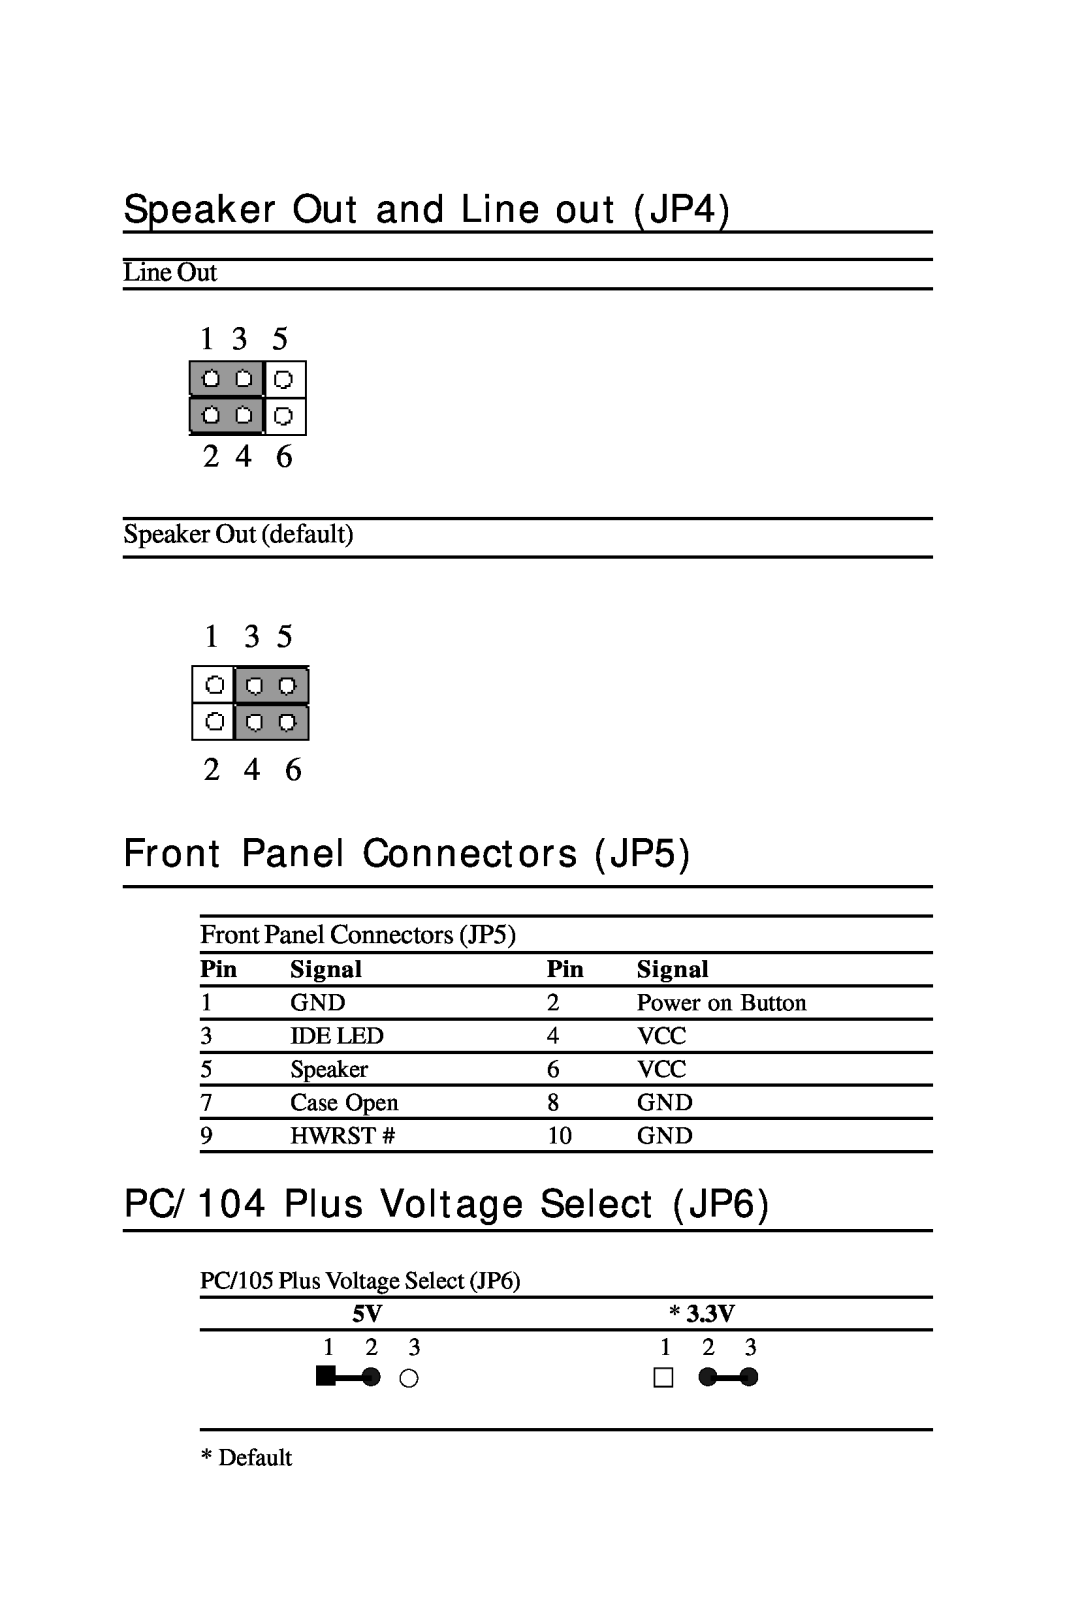 Intel PCM-6896 Speaker Out and Line out JP4, Front Panel Connectors JP5, PC/104 Plus Voltage Select JP6, 1 3 2 4, Signal 